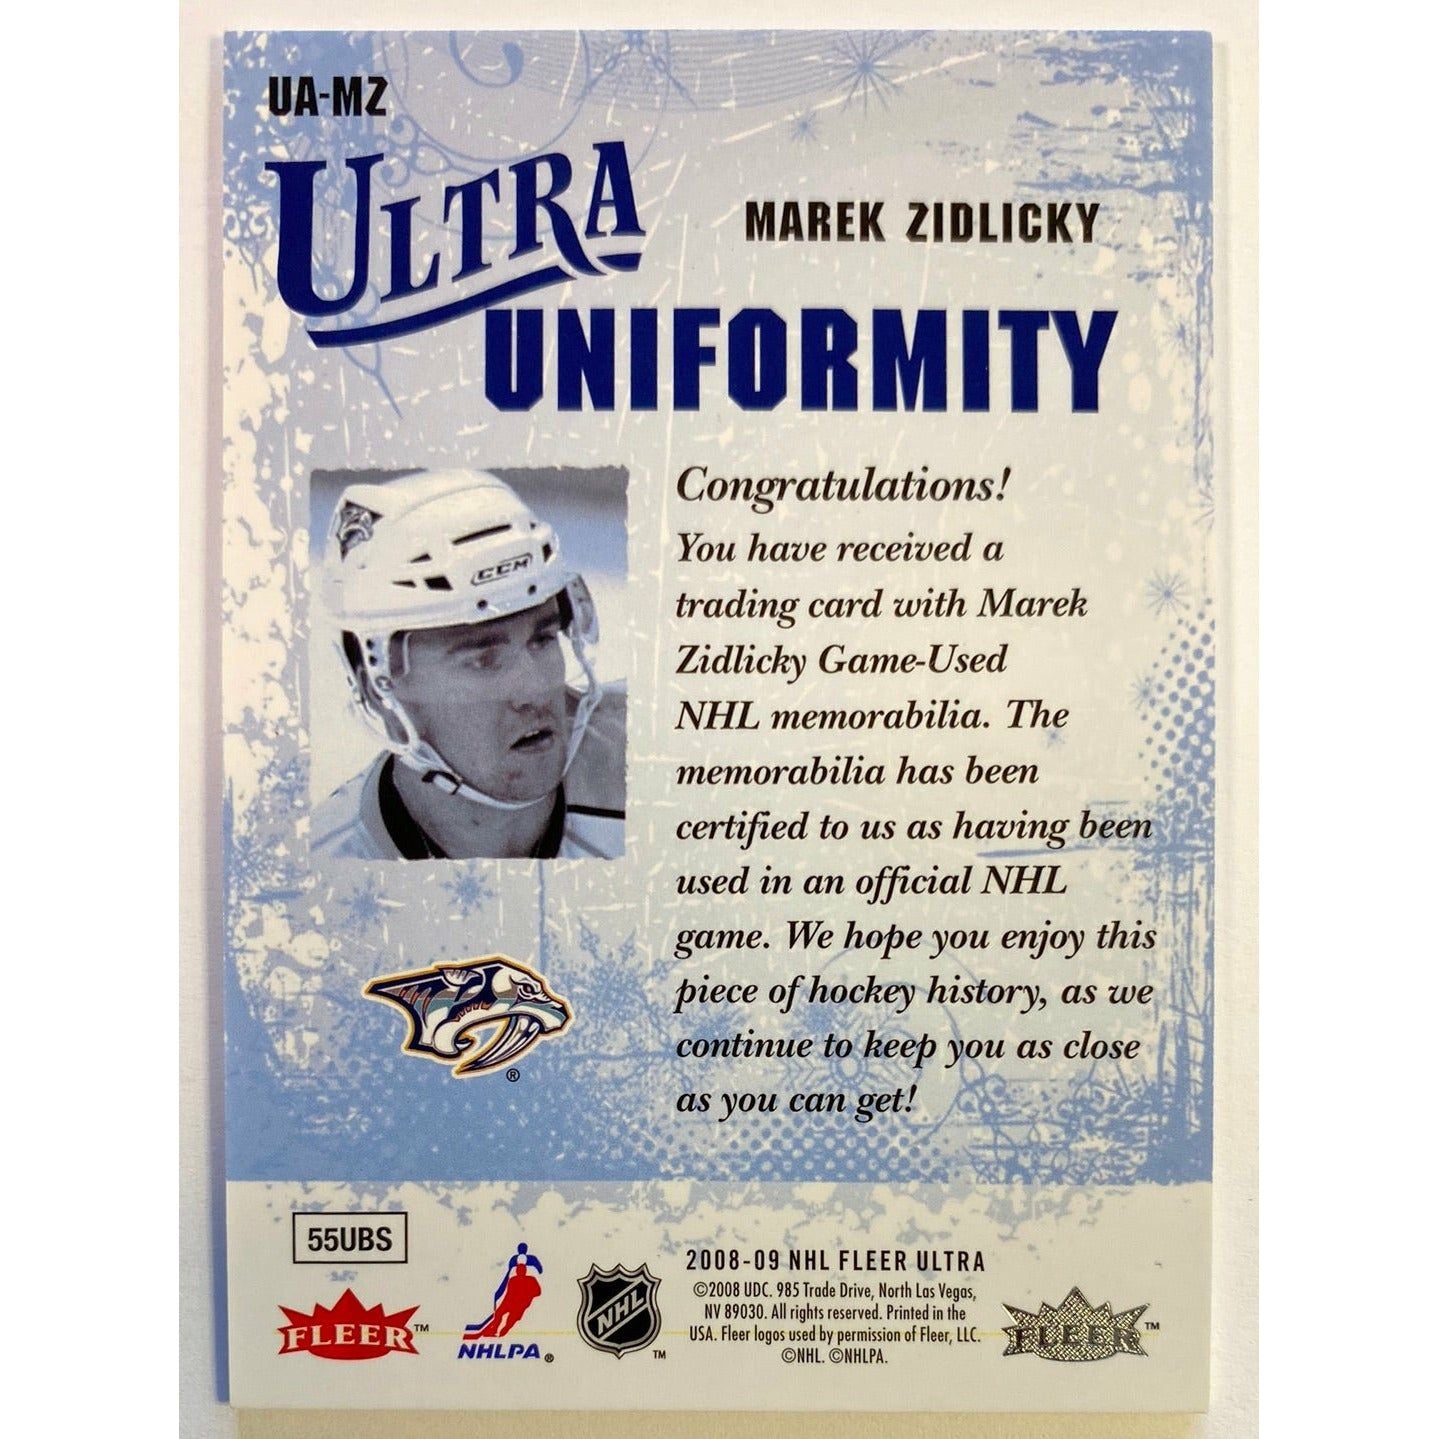 2008-09 Fleer Ultra Marek Zidlicky Ultra Uniformity